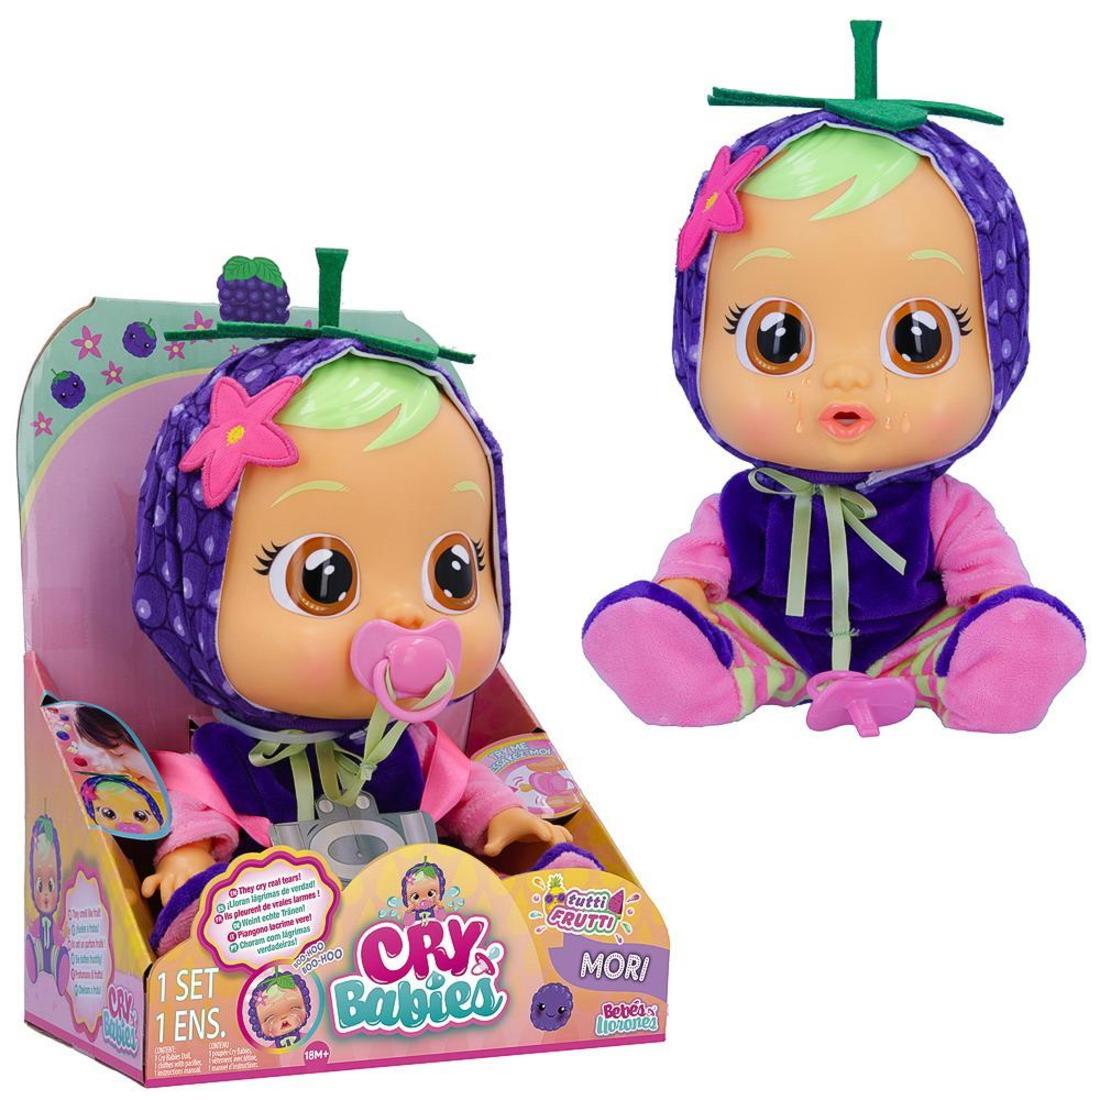 Кукла IMC Toys Cry Babies Плачущий младенец, Mori 31 см